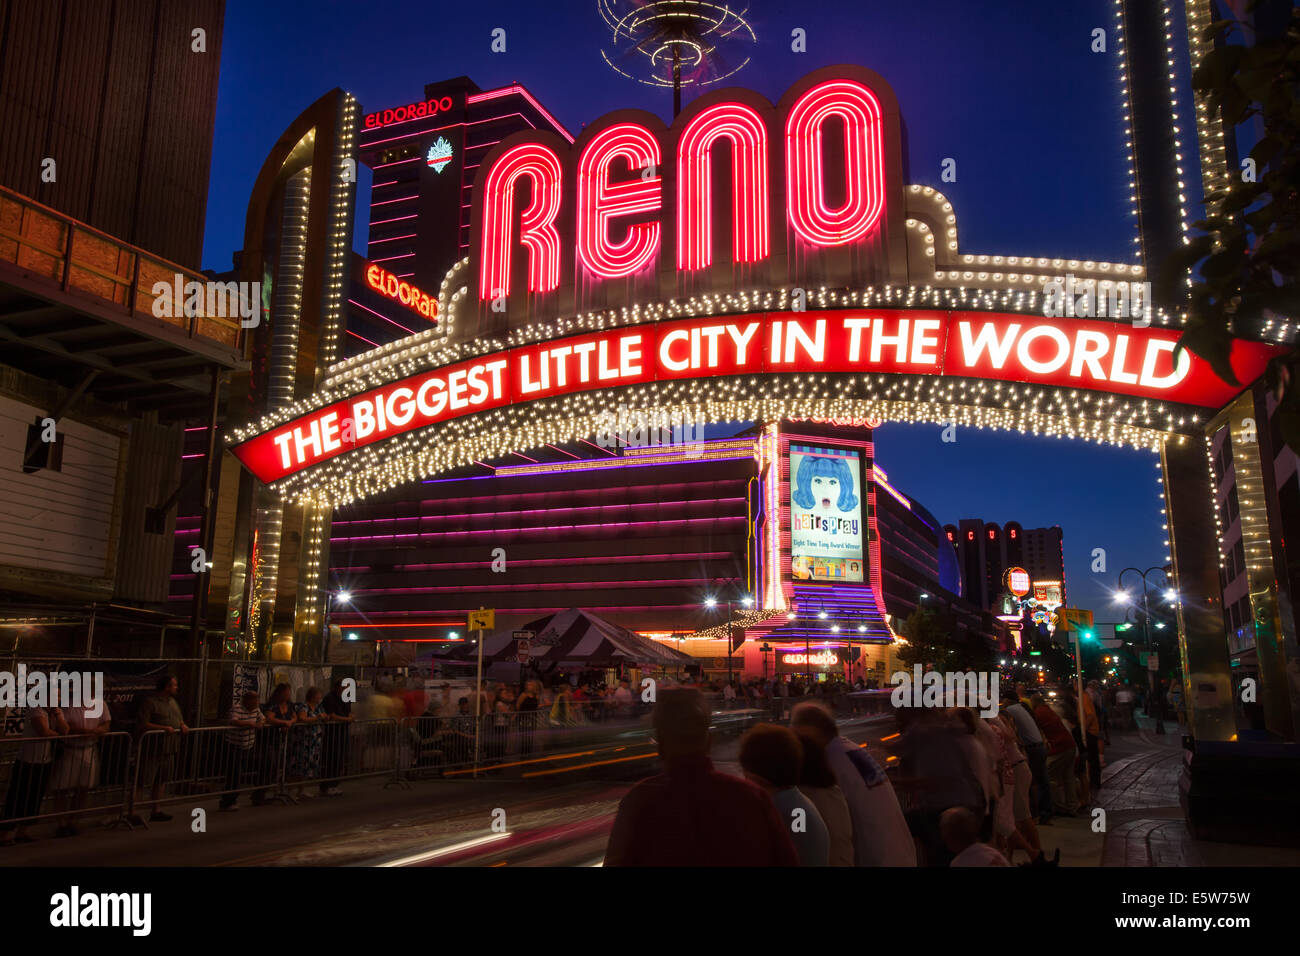 Signe Reno. La plus grande petite ville du monde. Des lumières spectaculaires de Reno, Nevada. Signature Reno emblématique Banque D'Images